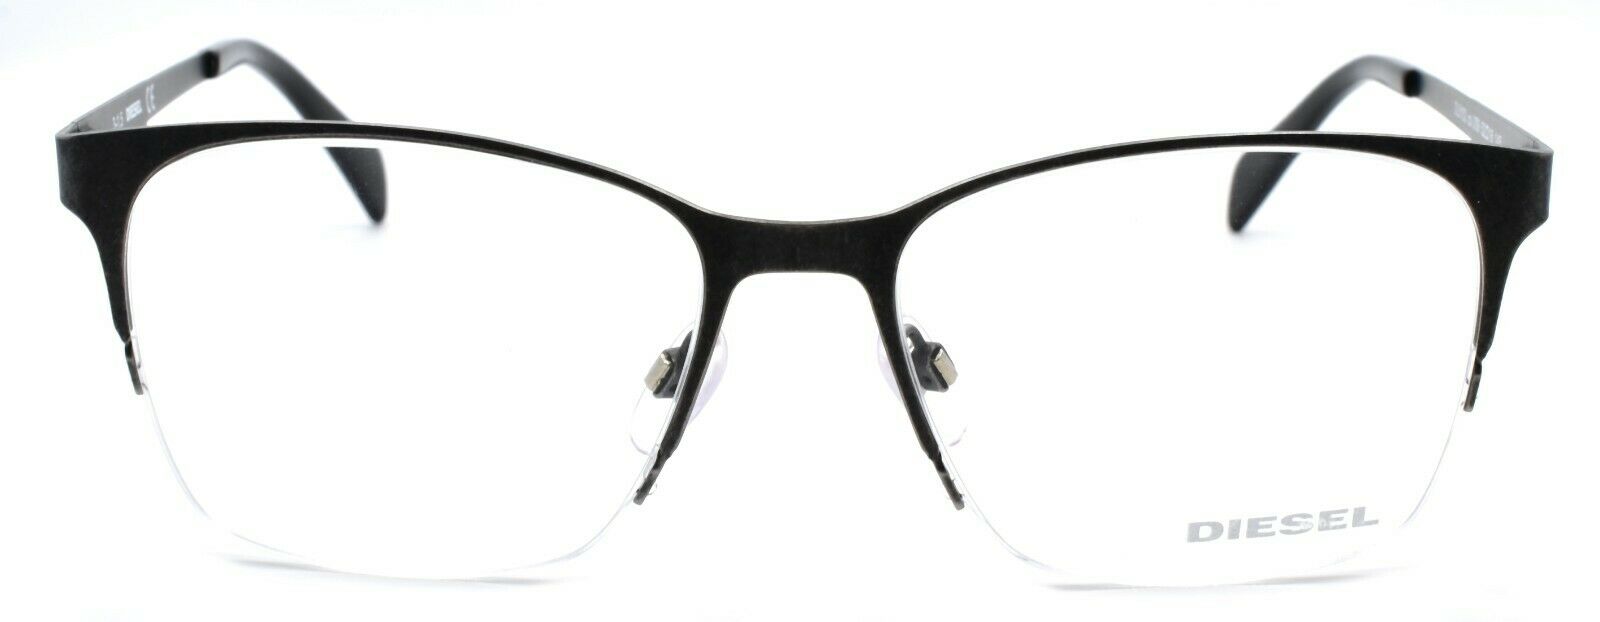 2-Diesel DL5152 009 Unisex Eyeglasses Frames Half Rim 52-16-145 Distressed Grey-664689707560-IKSpecs